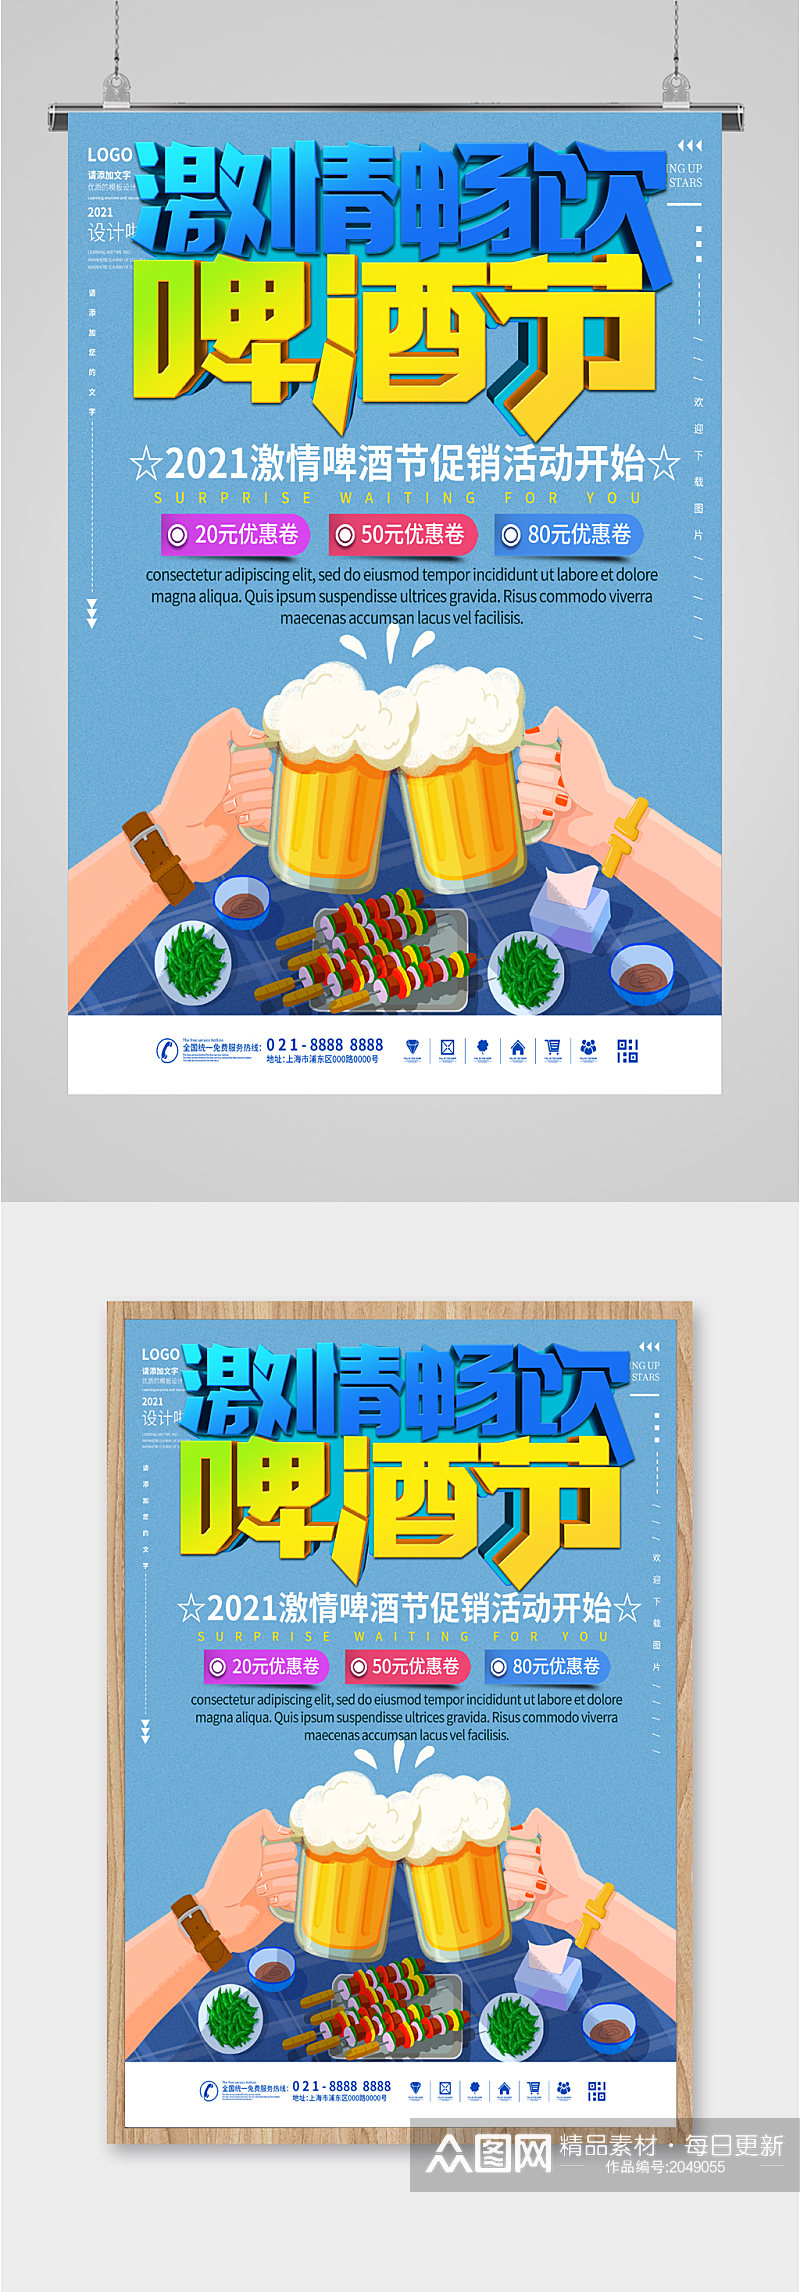 畅饮啤酒节宣传海报素材